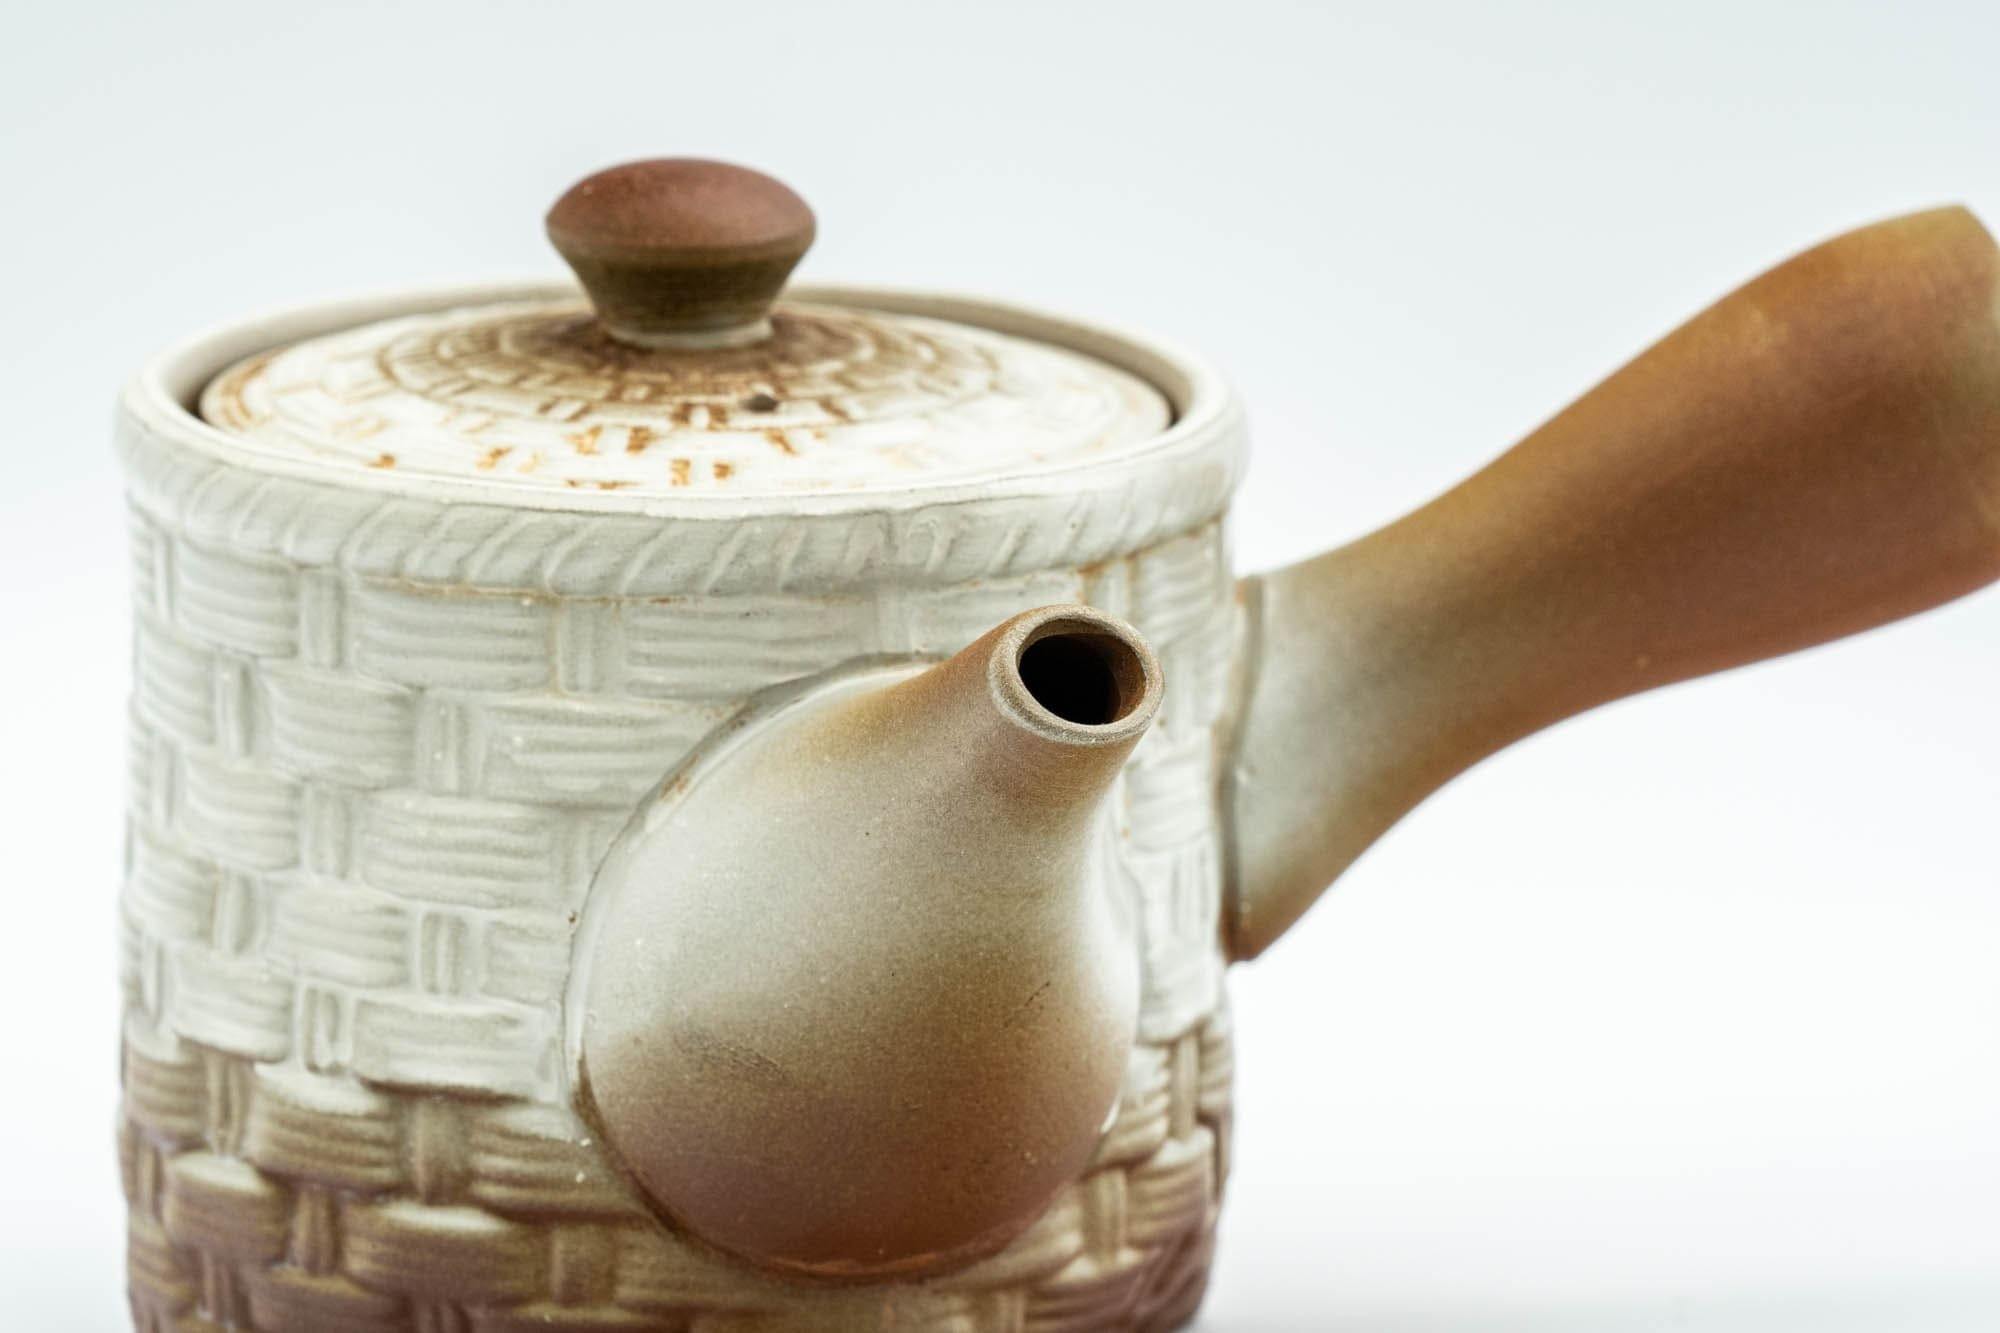 Japanese Kyusu - Brown and White Basket-patterned Teapot  - 190ml - Tezumi